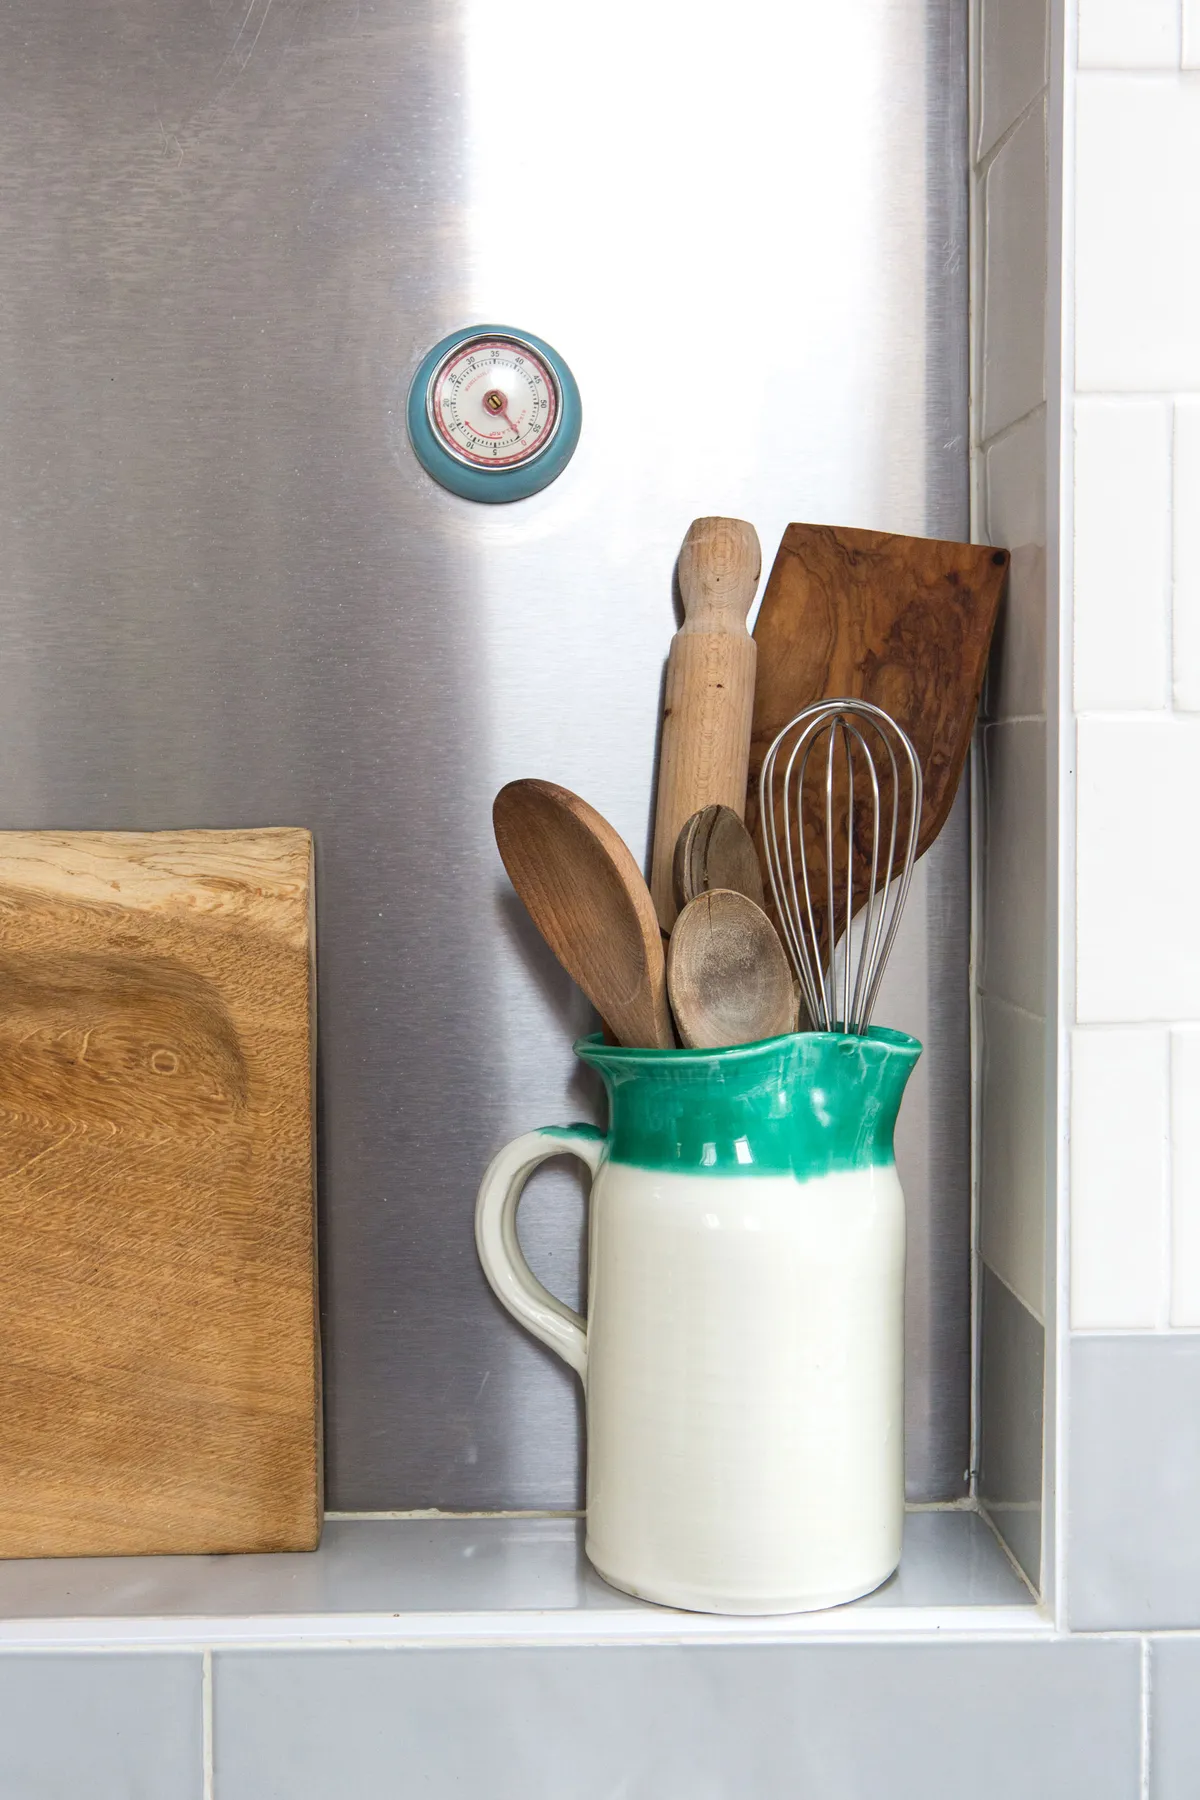 Kitchen makeover - wooden utensils in a bright ceramic jug